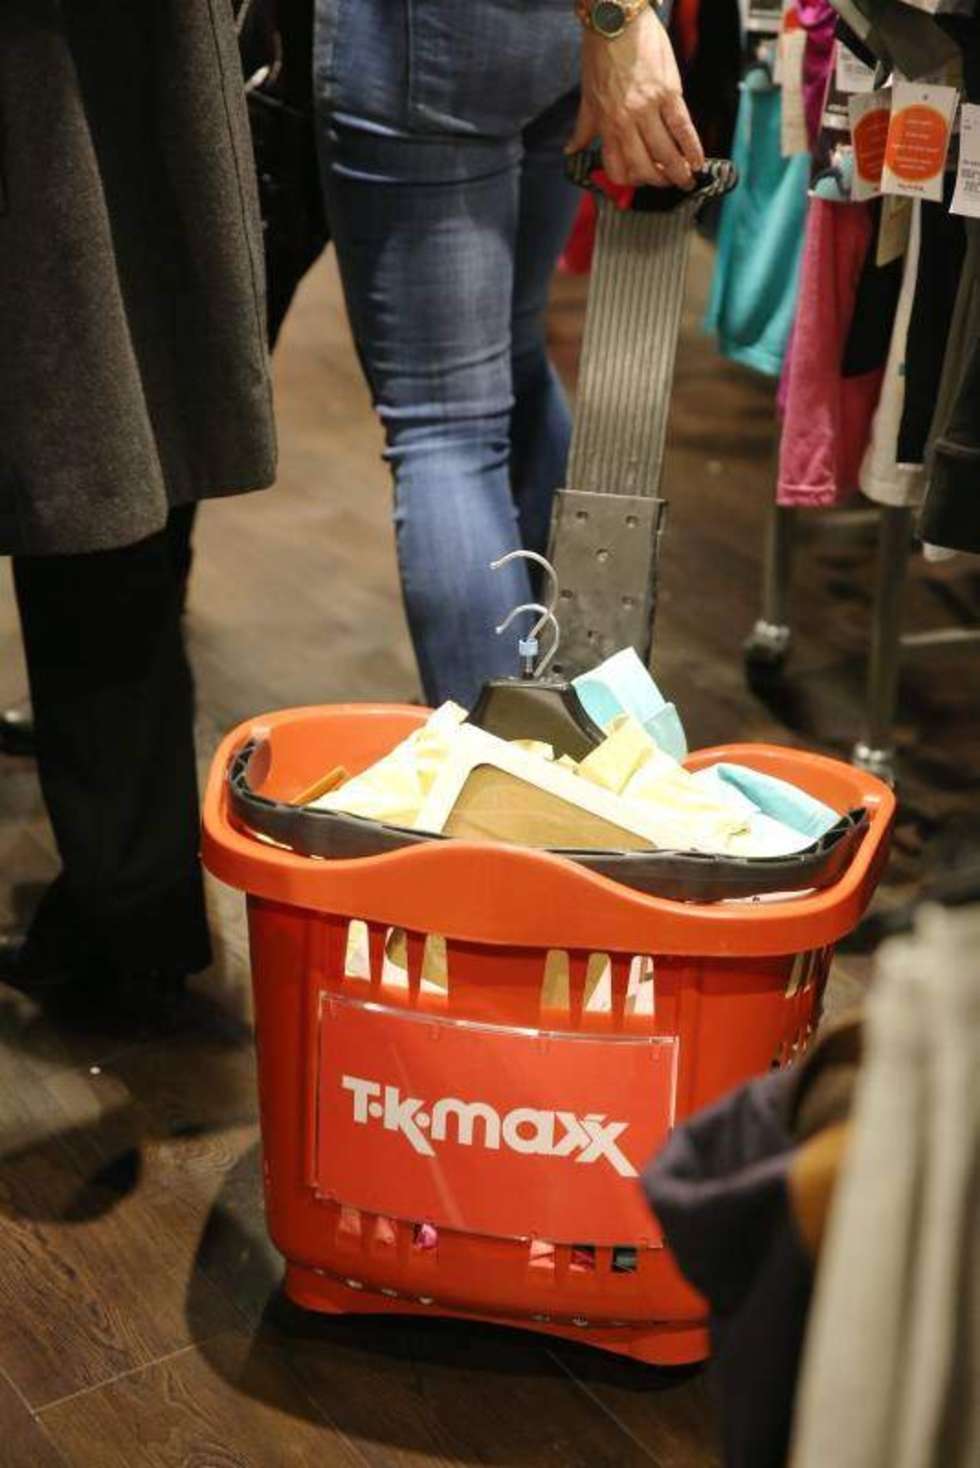  W Lublinie ruszył pierwszy sklep brytyjskiej sieci TK Maxx z markowymi ubraniami, butami i produktami dla domu w okazyjnych cenach. Fot. Maciej Kaczanowski